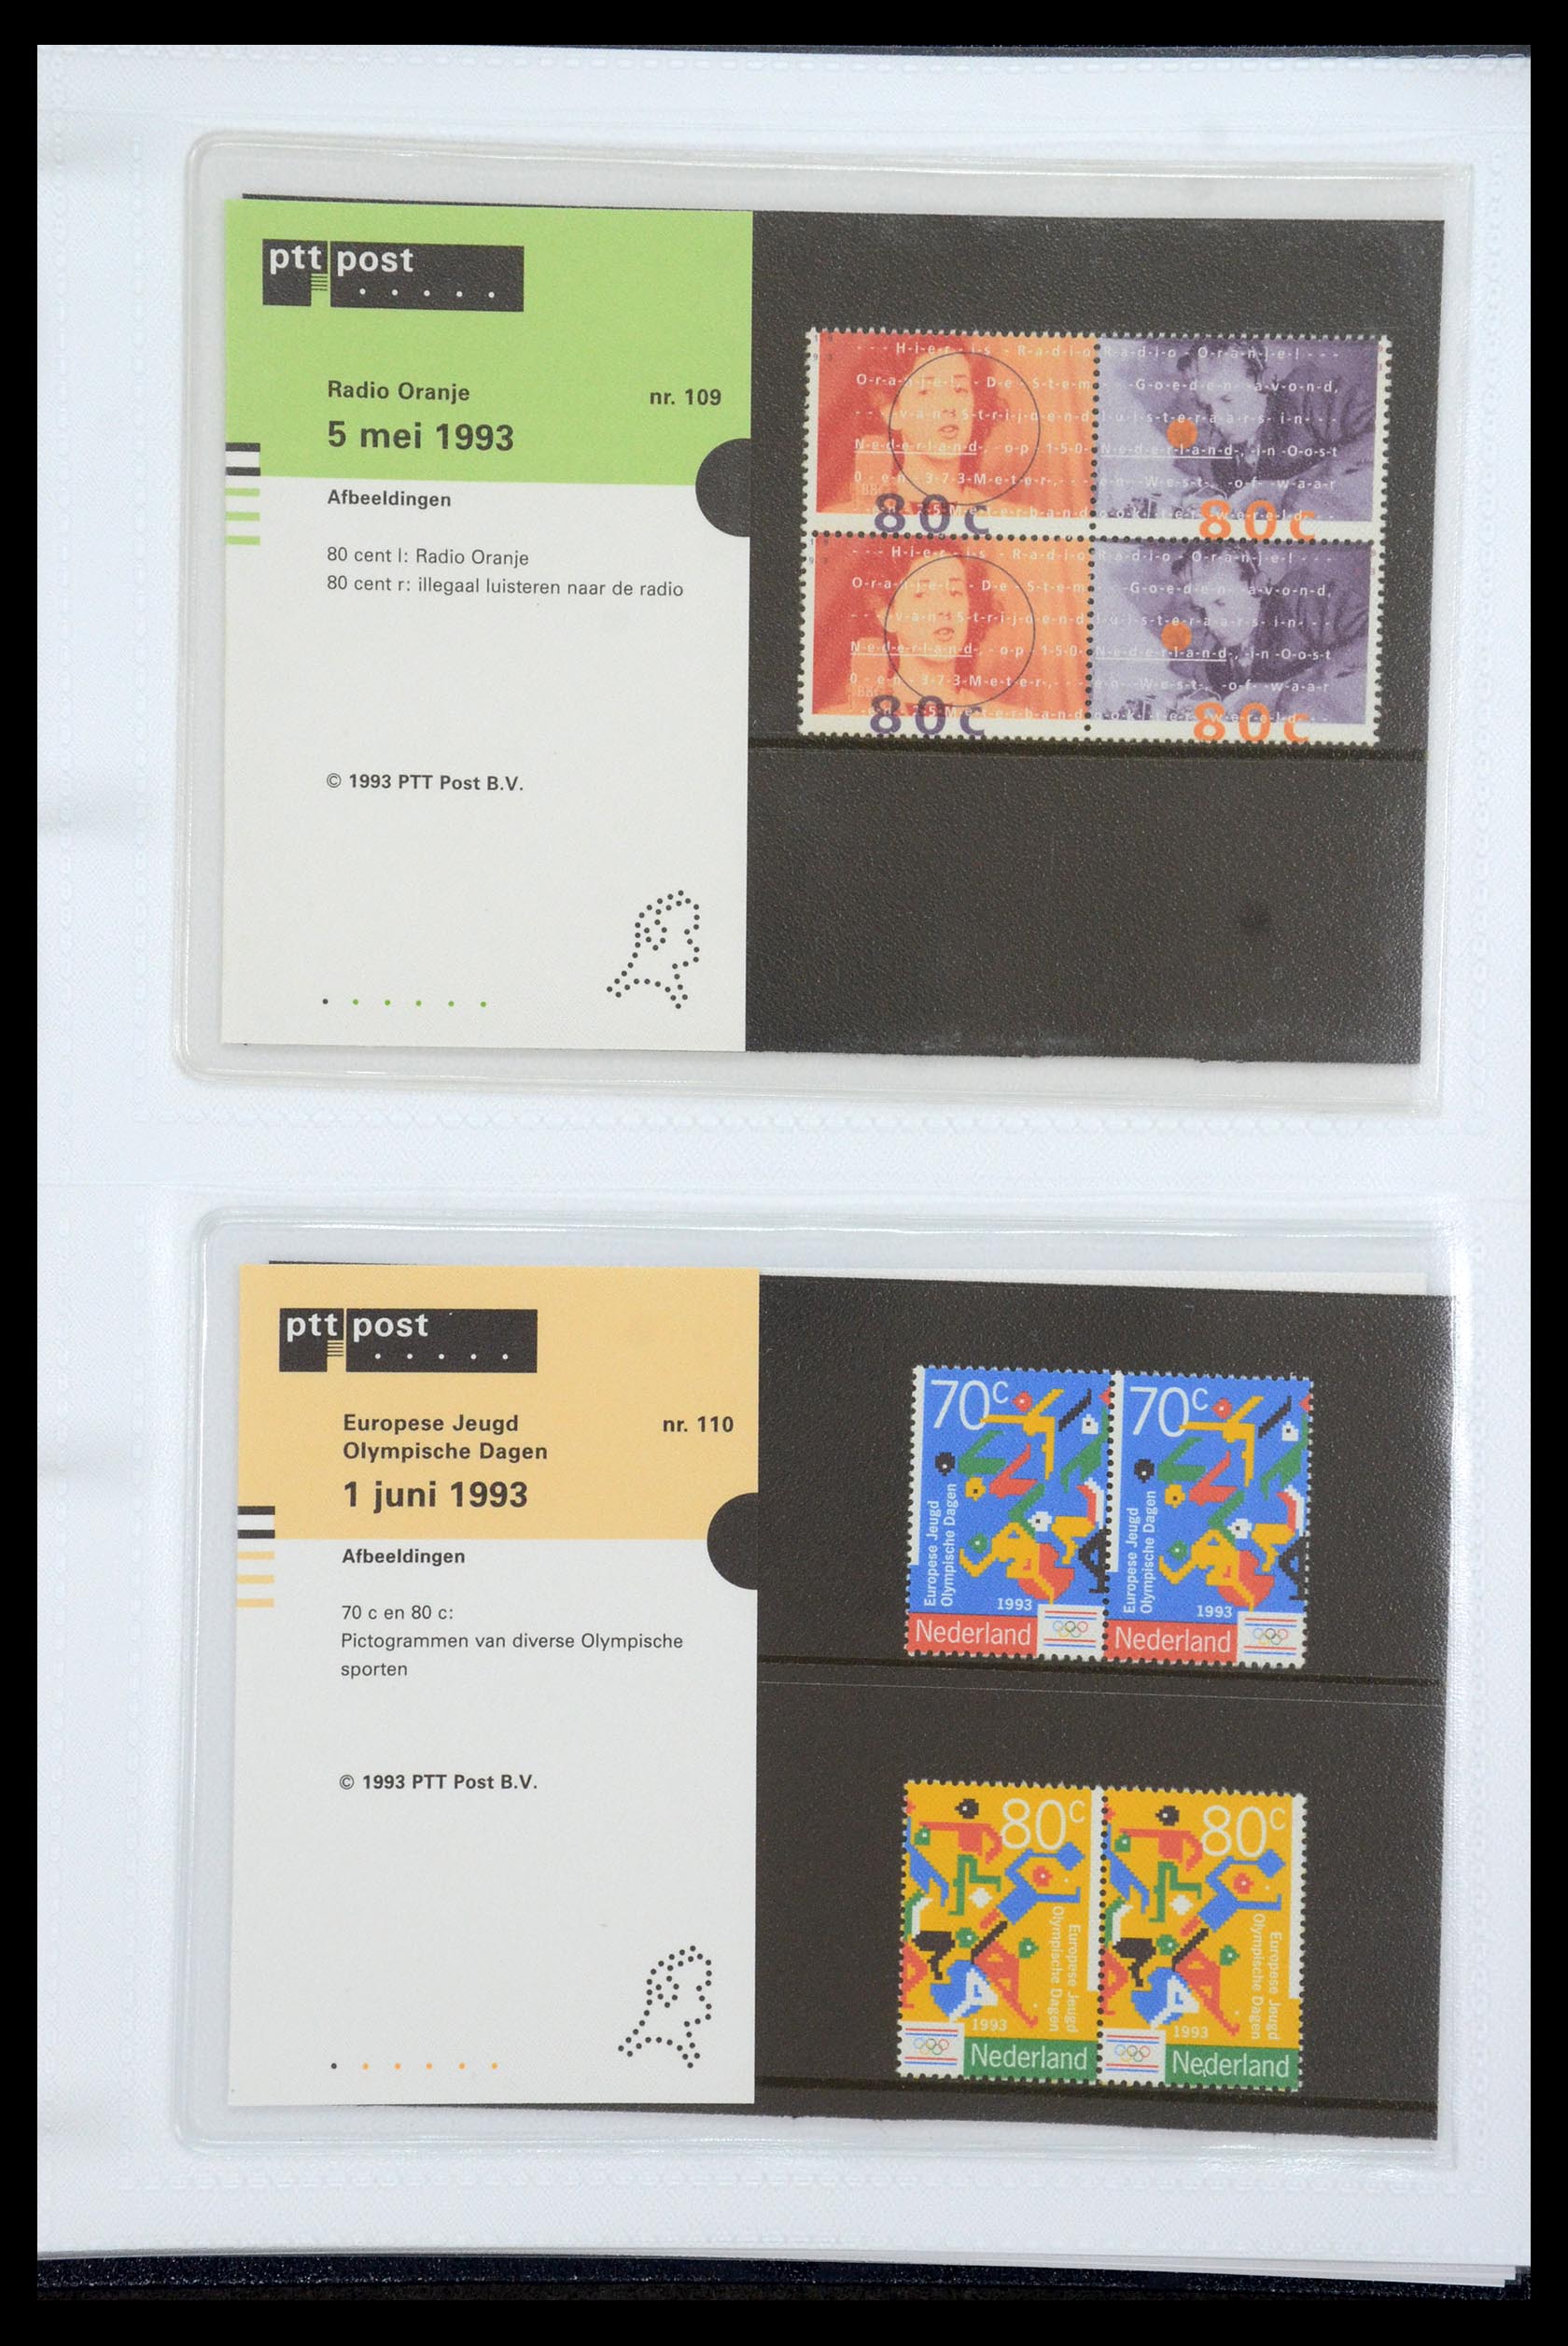 35947 057 - Stamp Collection 35947 Netherlands PTT presentation packs 1982-2019!